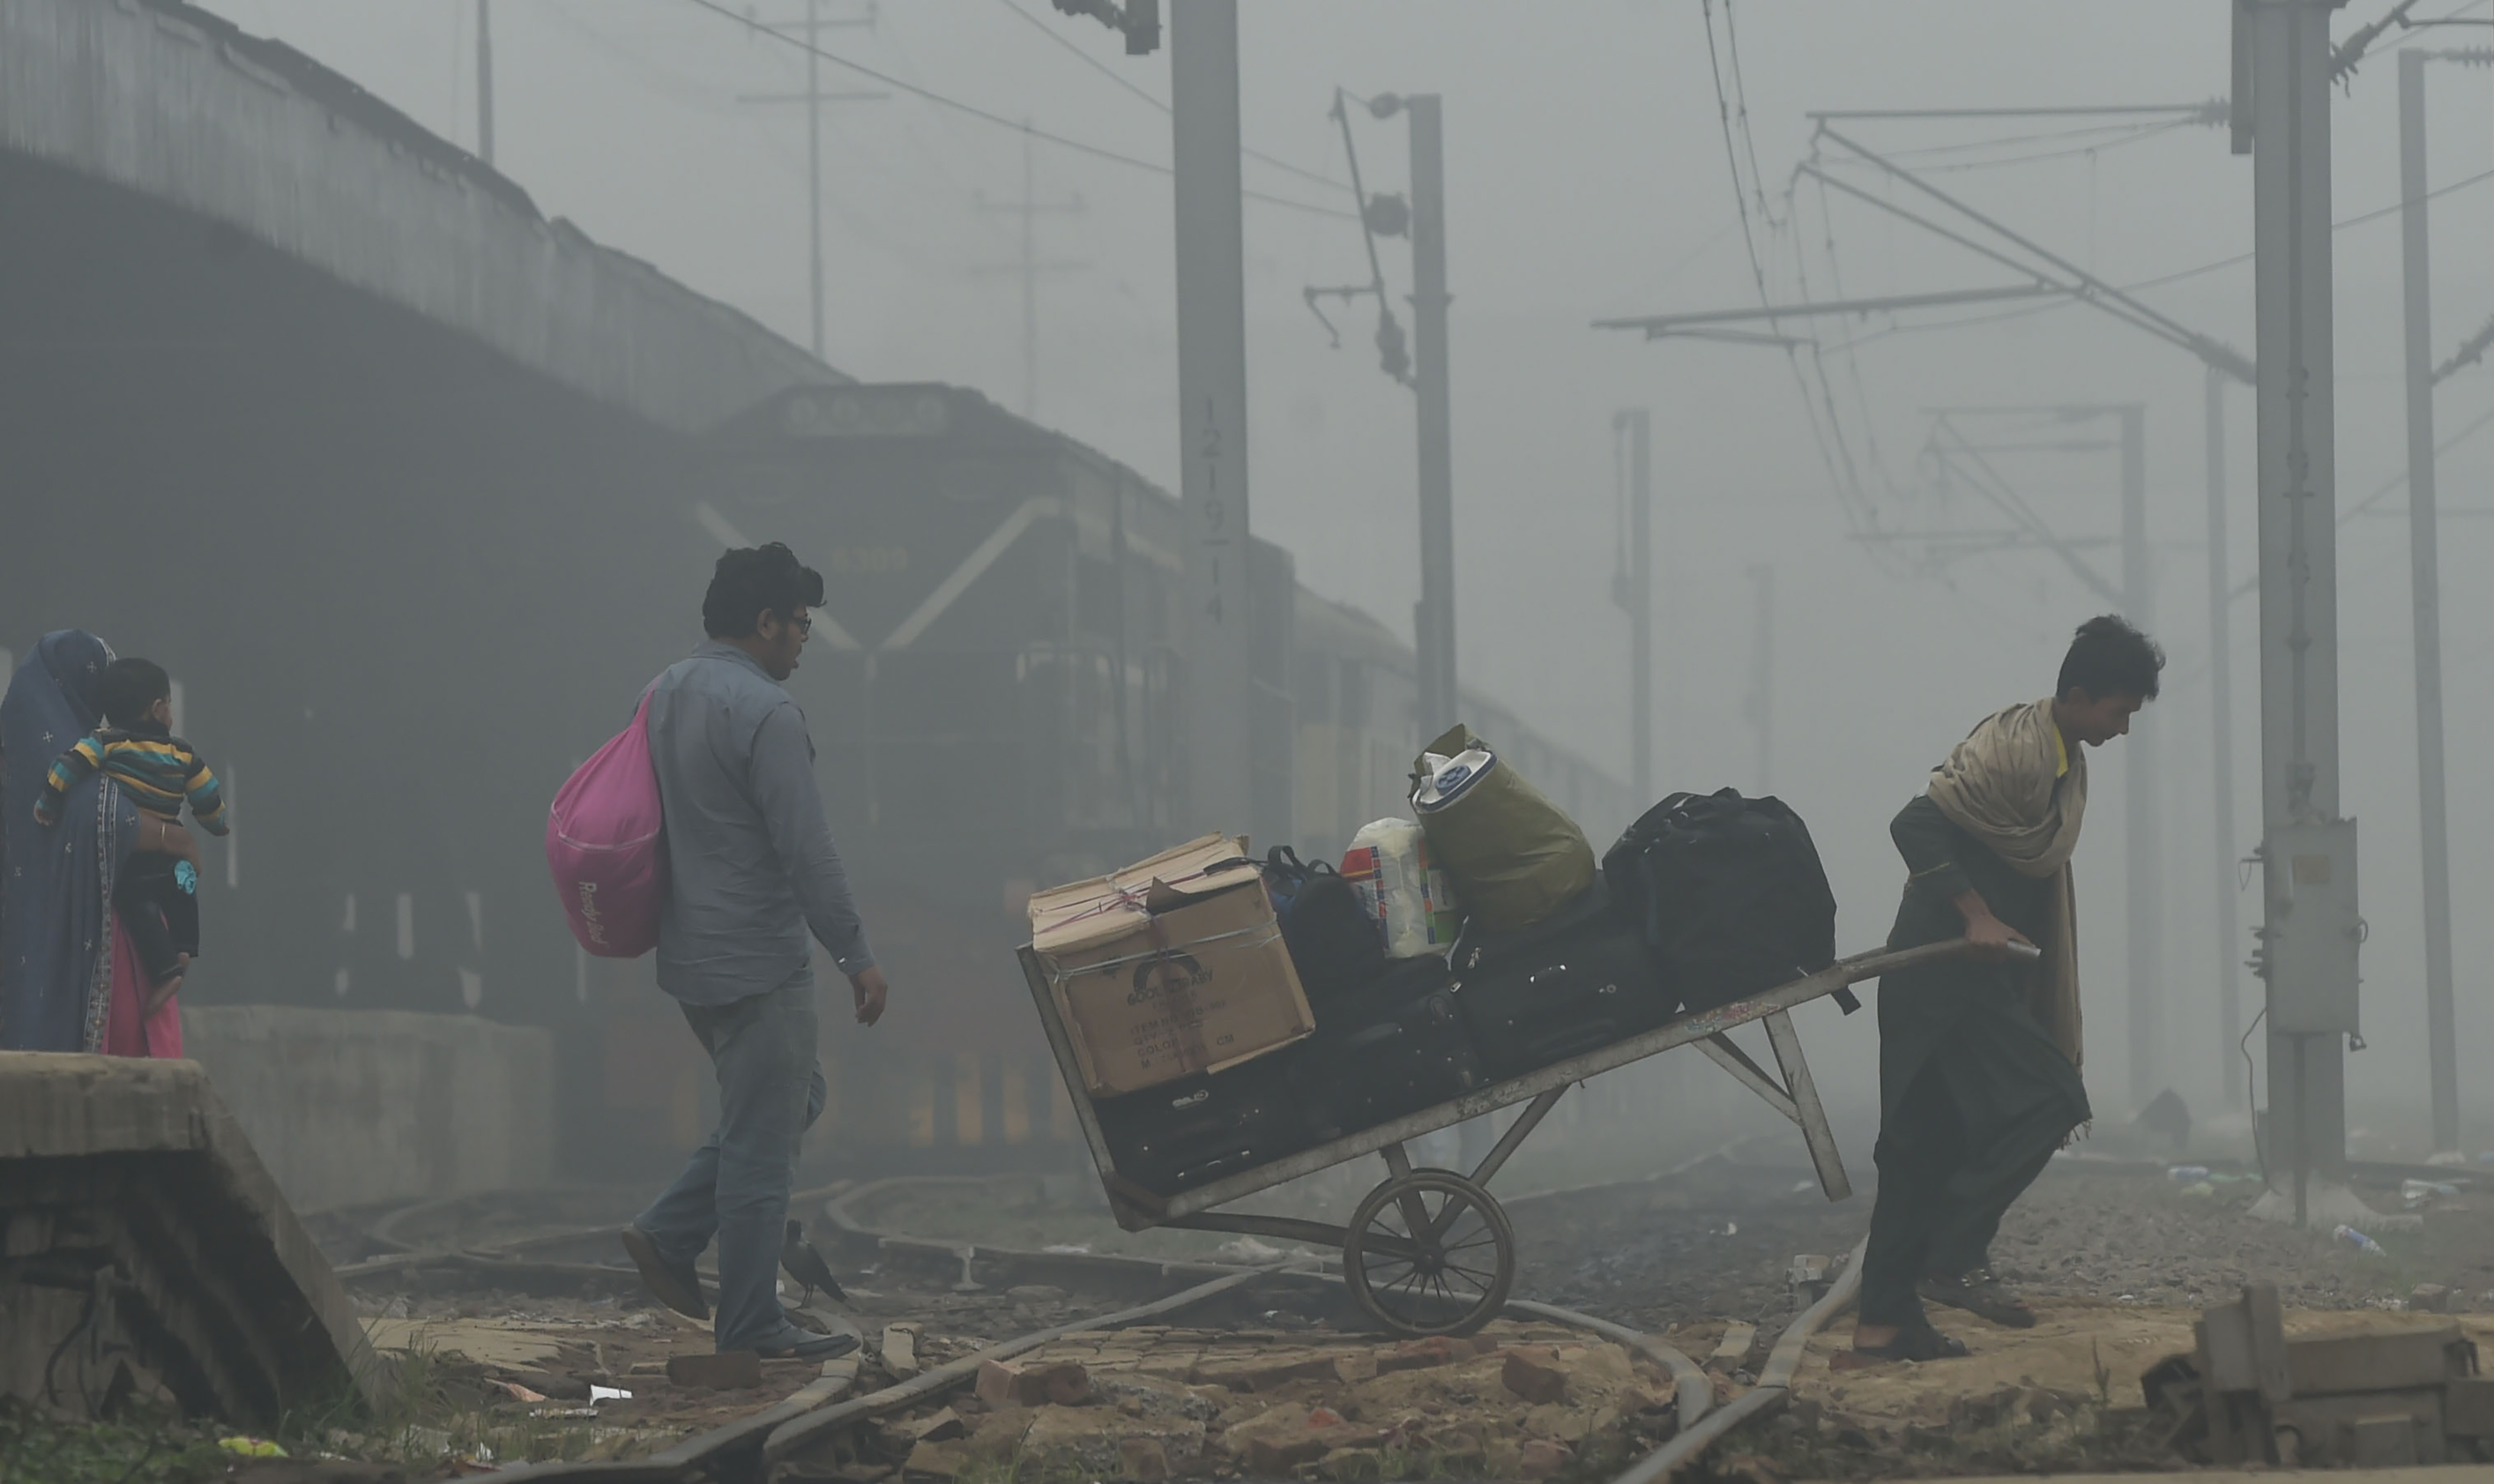 تلوث الهواء فى الهند